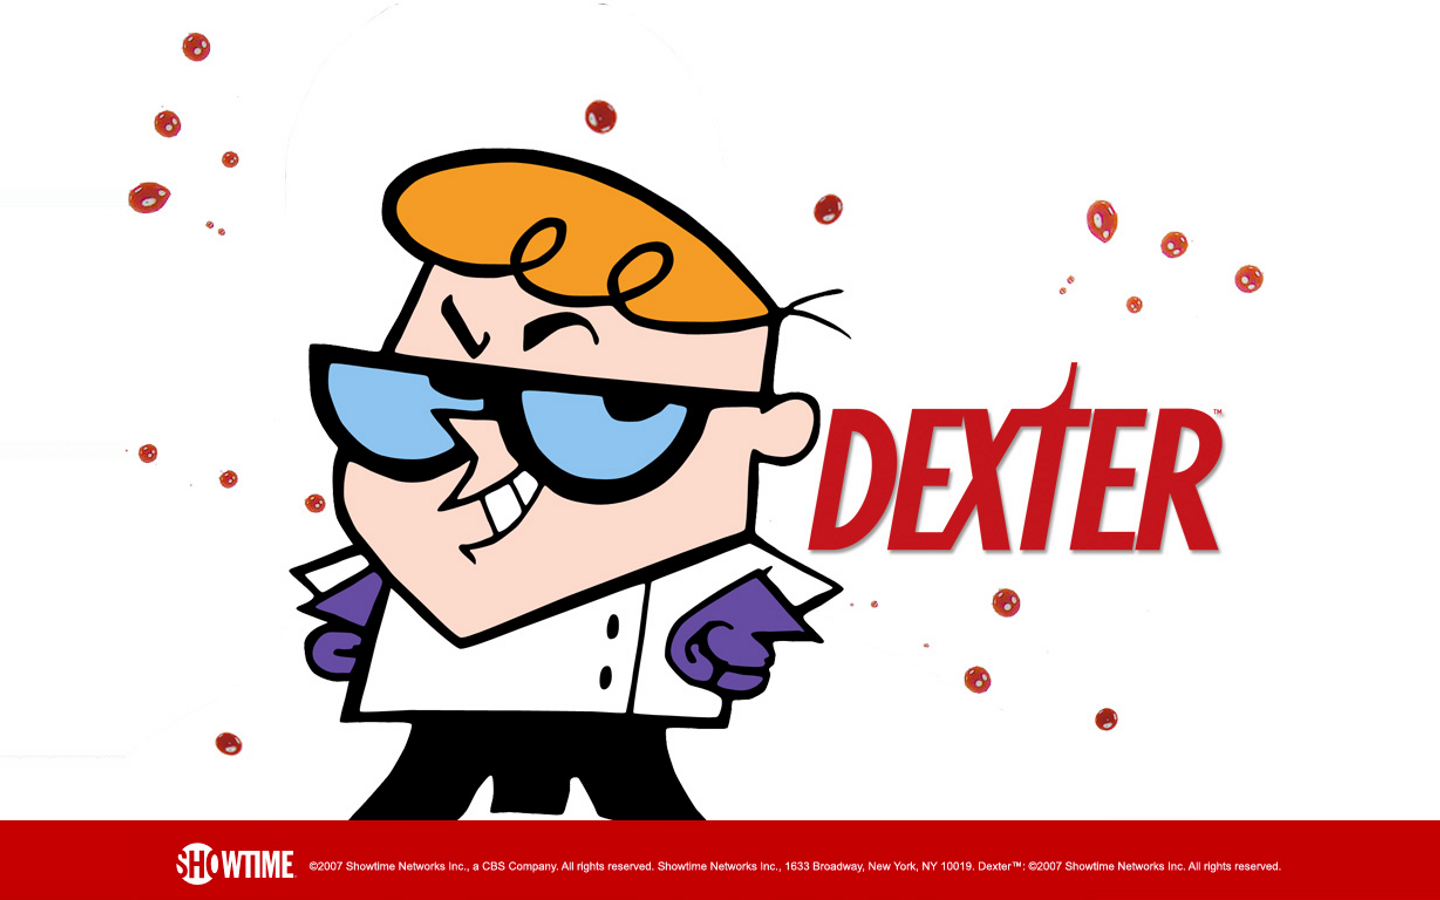 Dexter Cartoon Hd - 1440x900 Wallpaper 